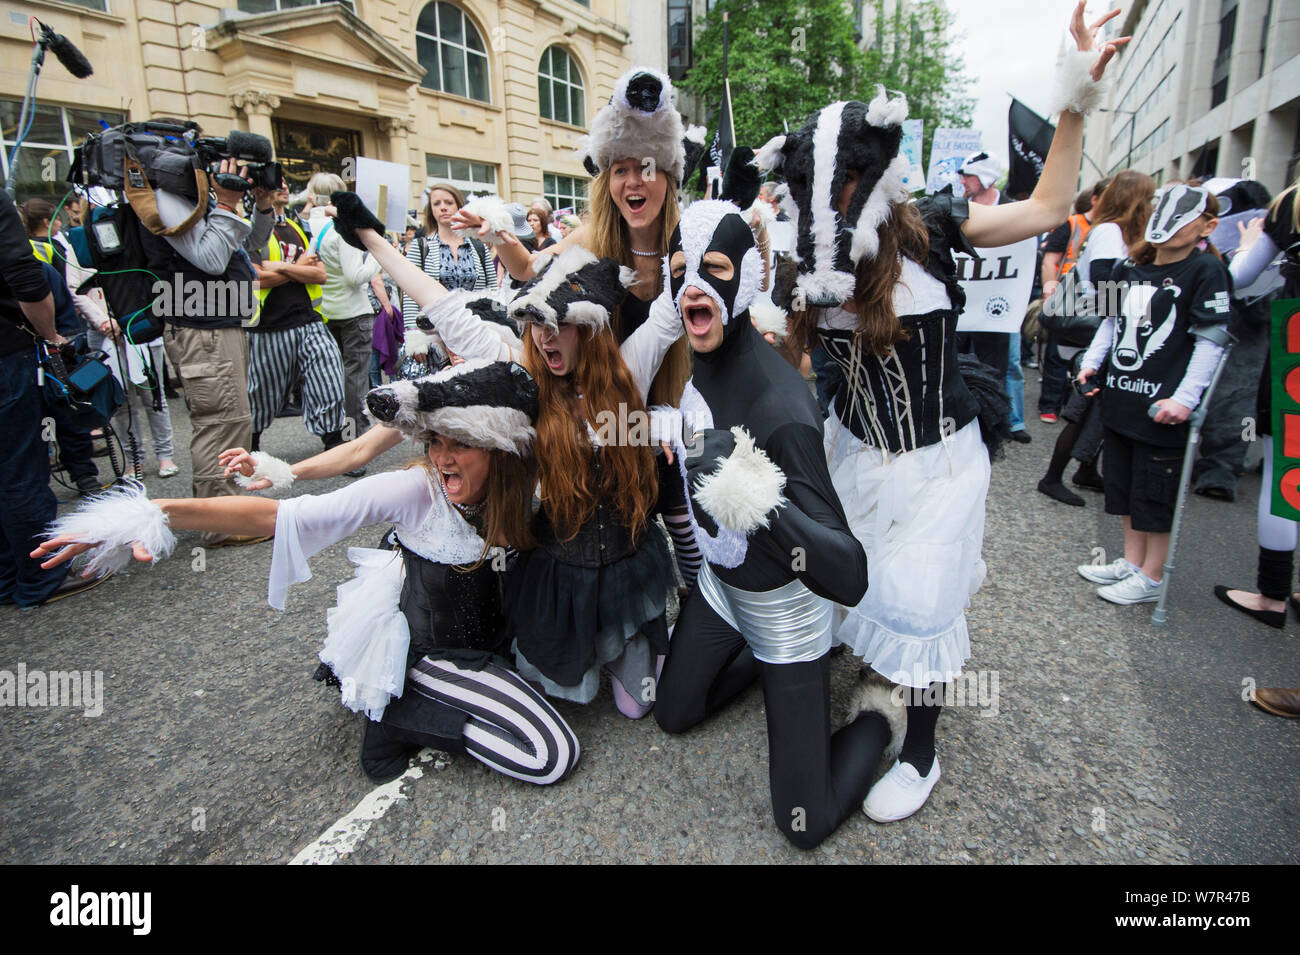 Tänzer aus der kunstvollen Badger Gruppe, Tanzen in Badger Kostüme, anti Badger cull März, London am 1. Juni 2013. Stockfoto